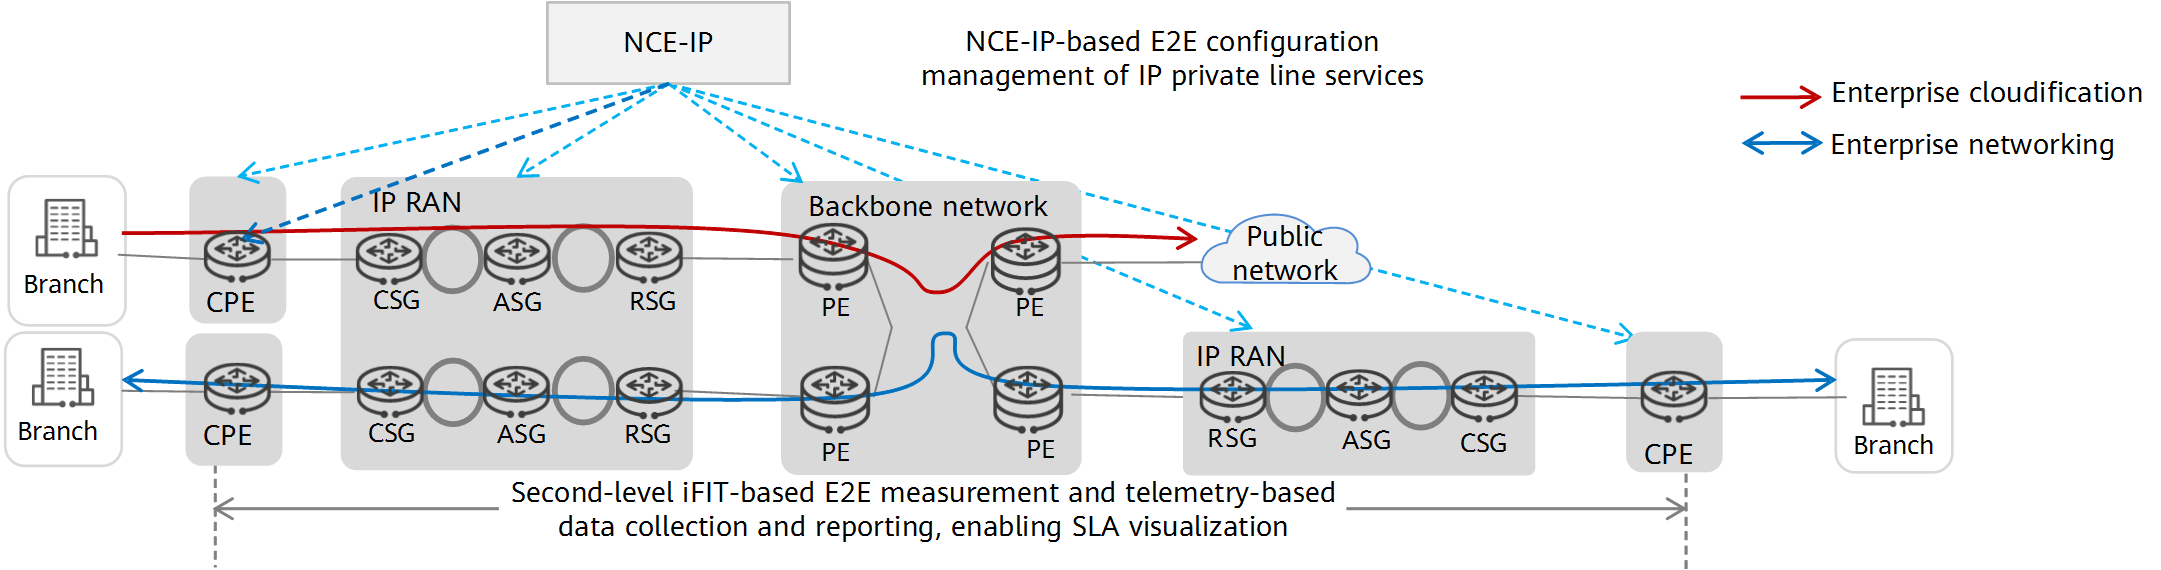 Premium IP private line solution